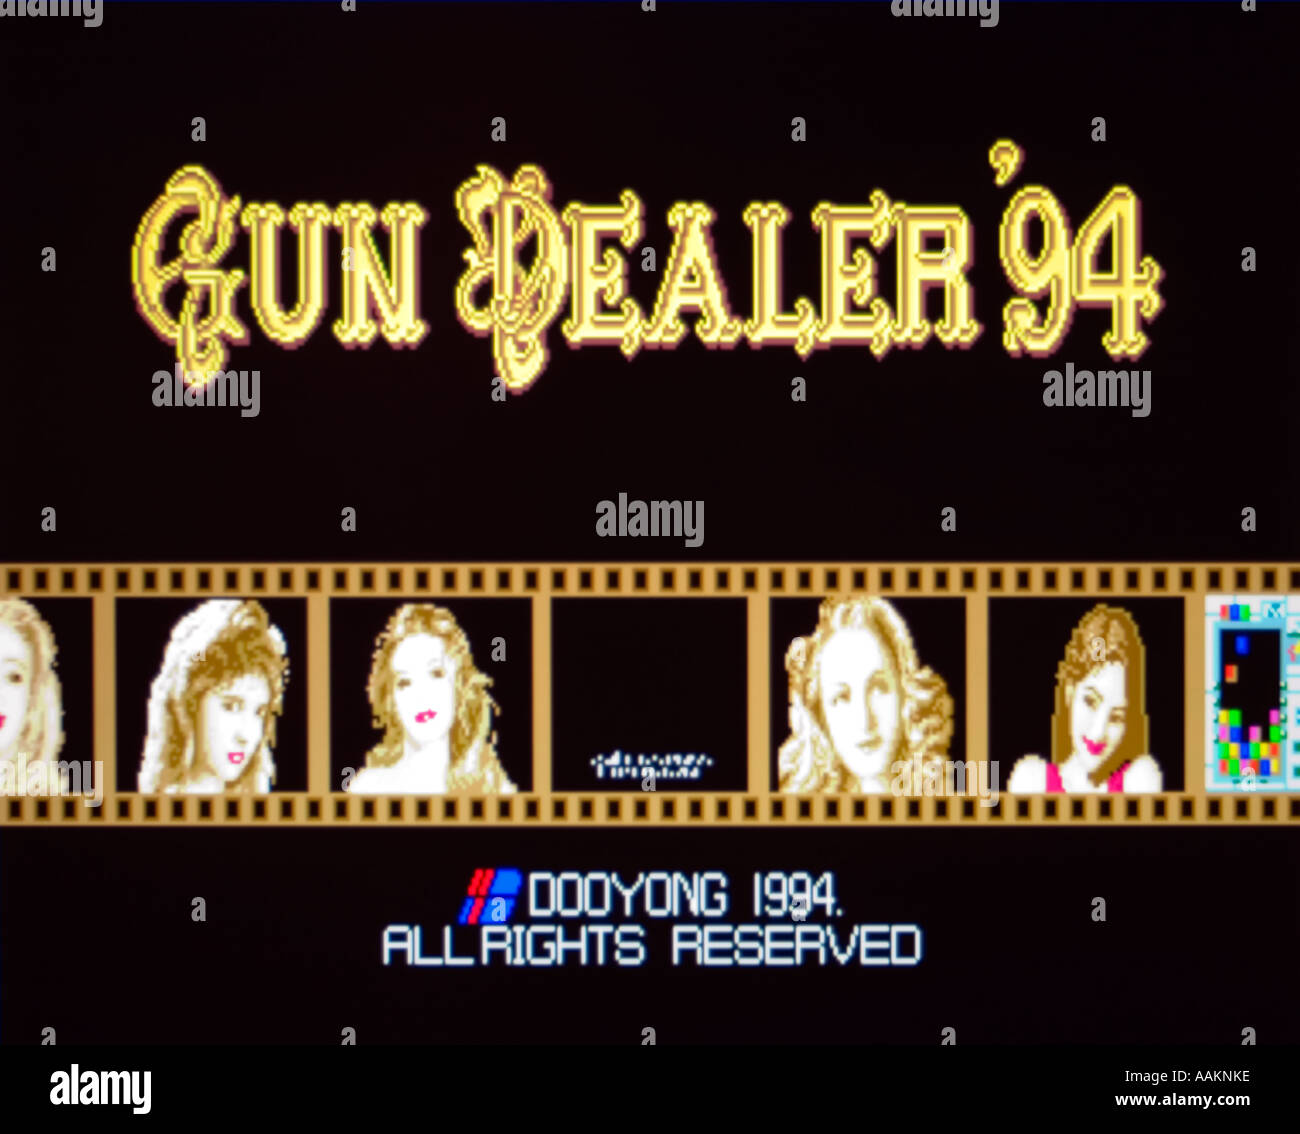 Gun Dealer 94 Dooyong 1994 vintage arcade videogame screenshot - EDITORIAL USE ONLY Stock Photo